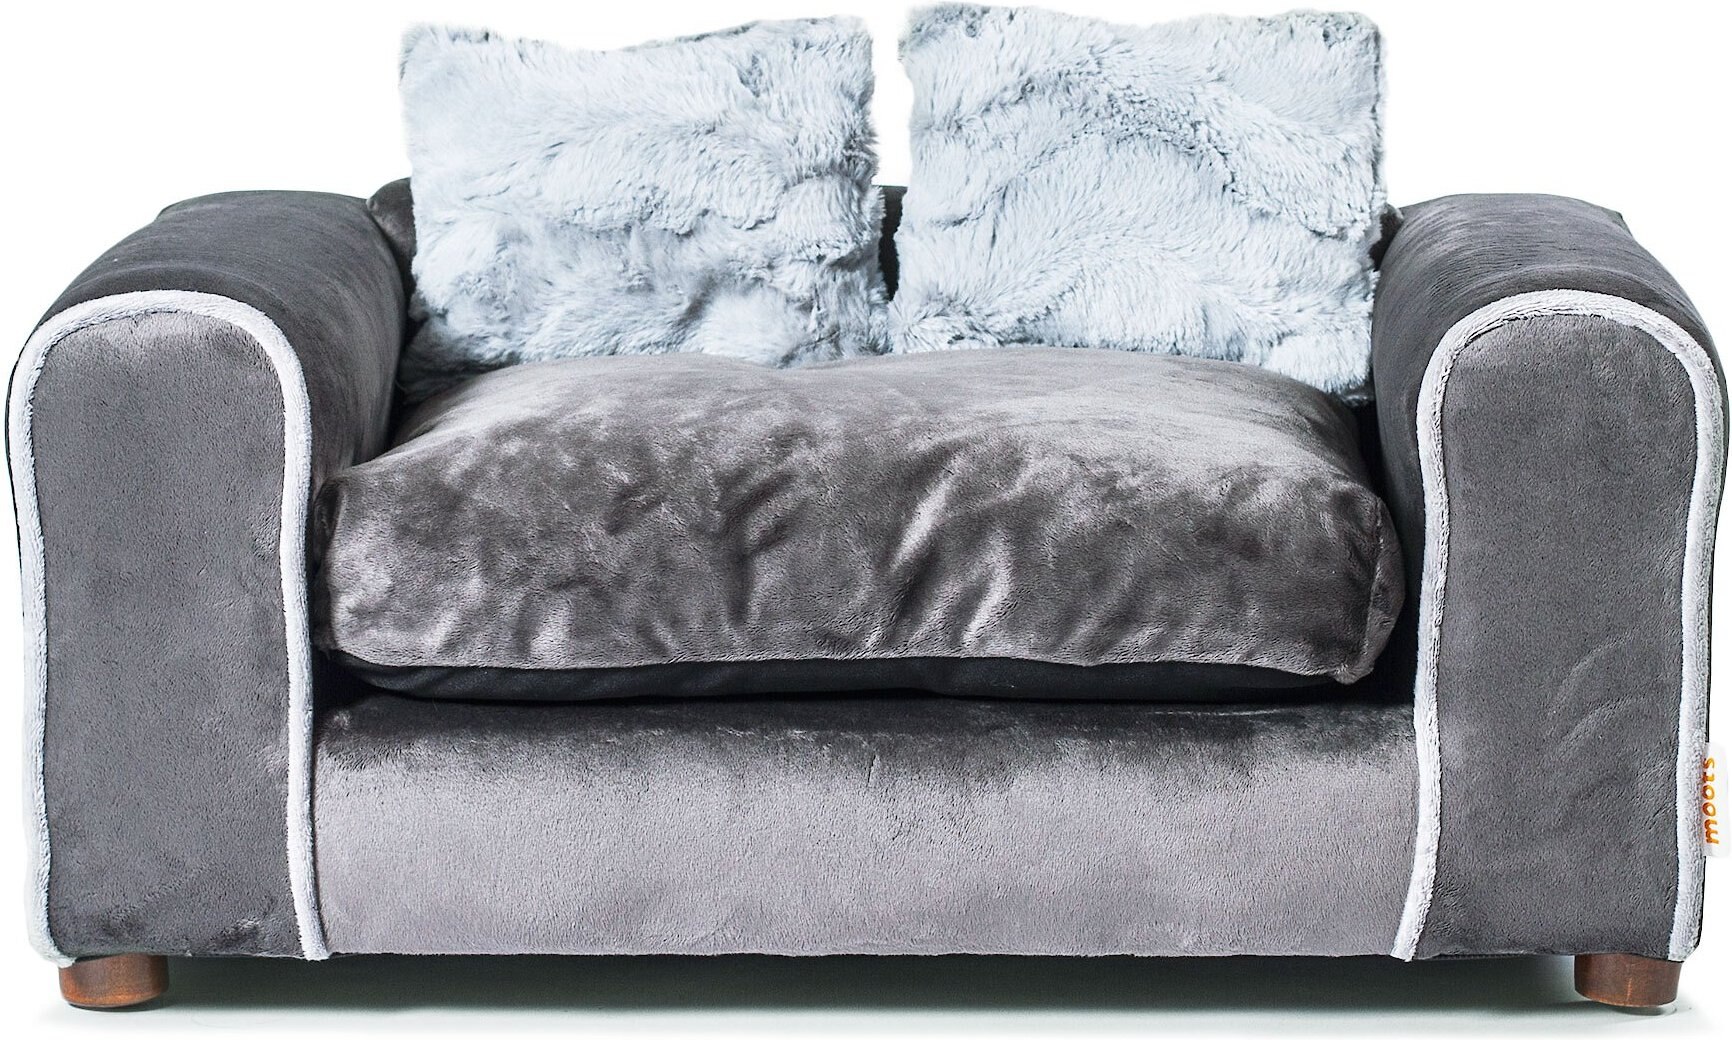 Moots Sofa Furry Pet Bed 